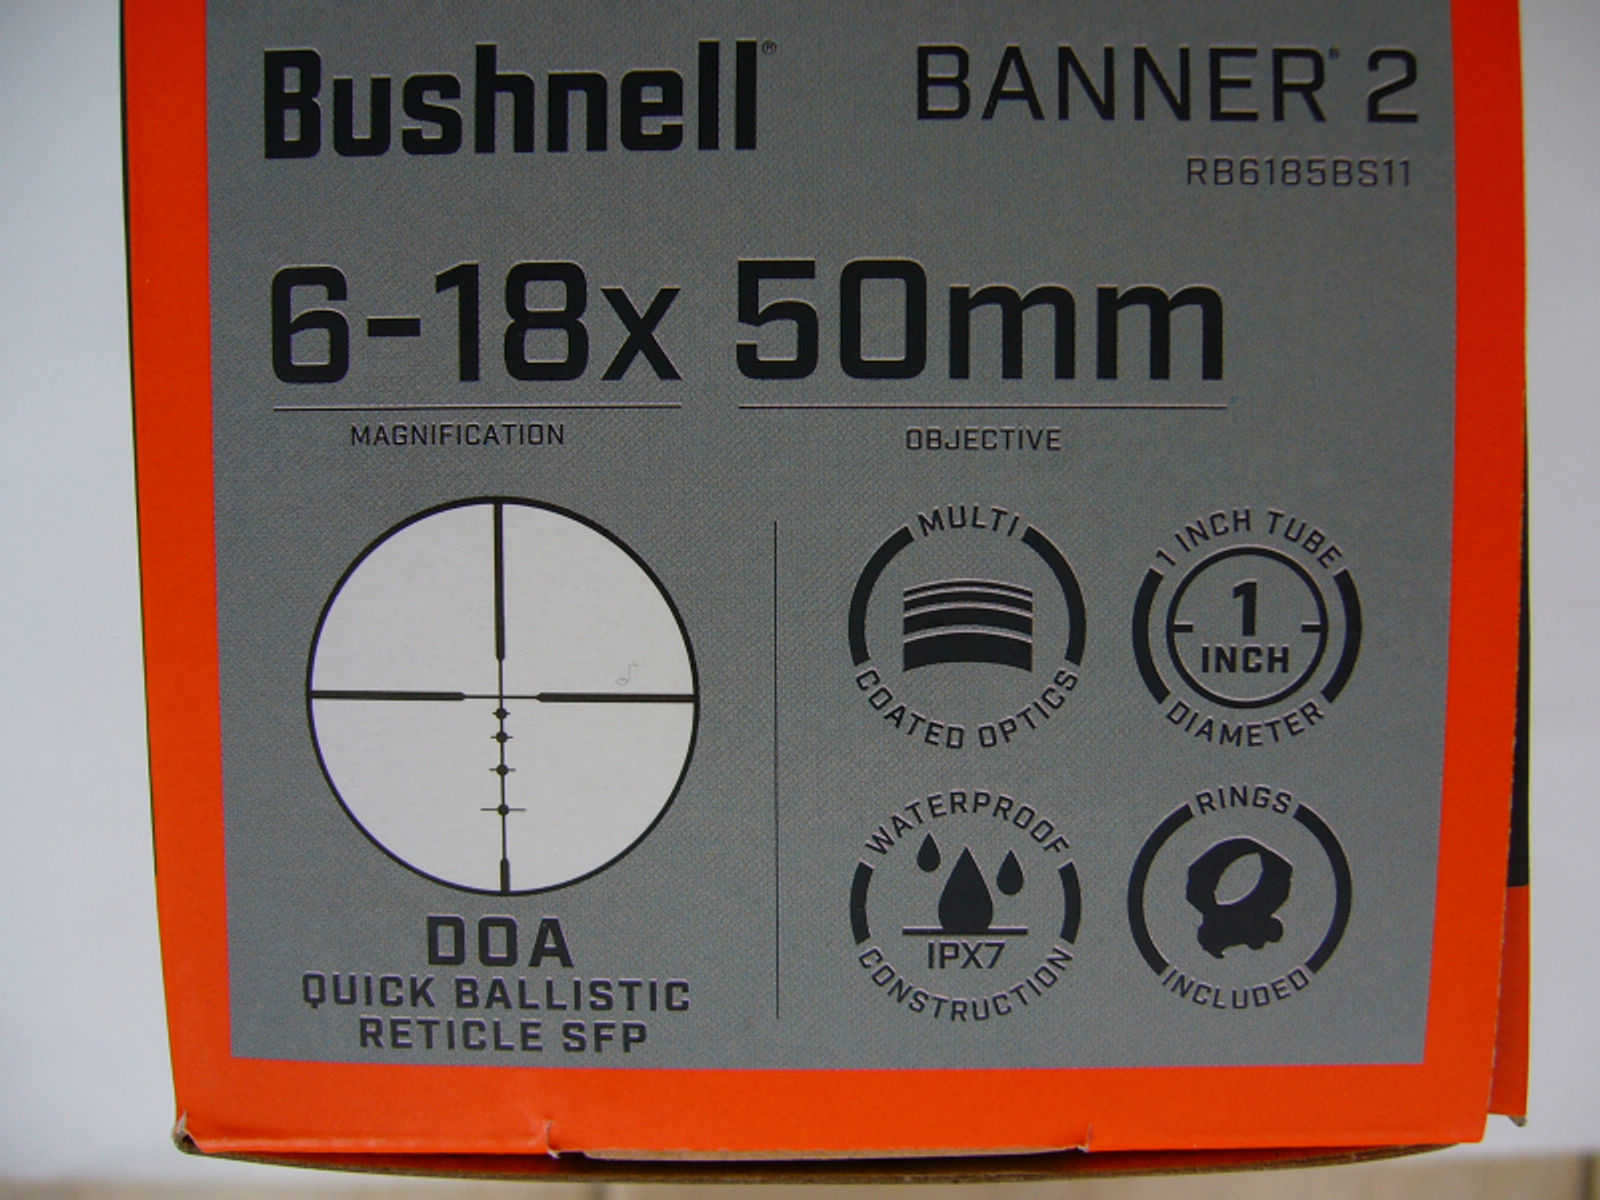 Bushnell Banner 2 Zielfernrohr 6-18x50 DOA QBR. Eine erstaunliche Leistung für kleines Geld.